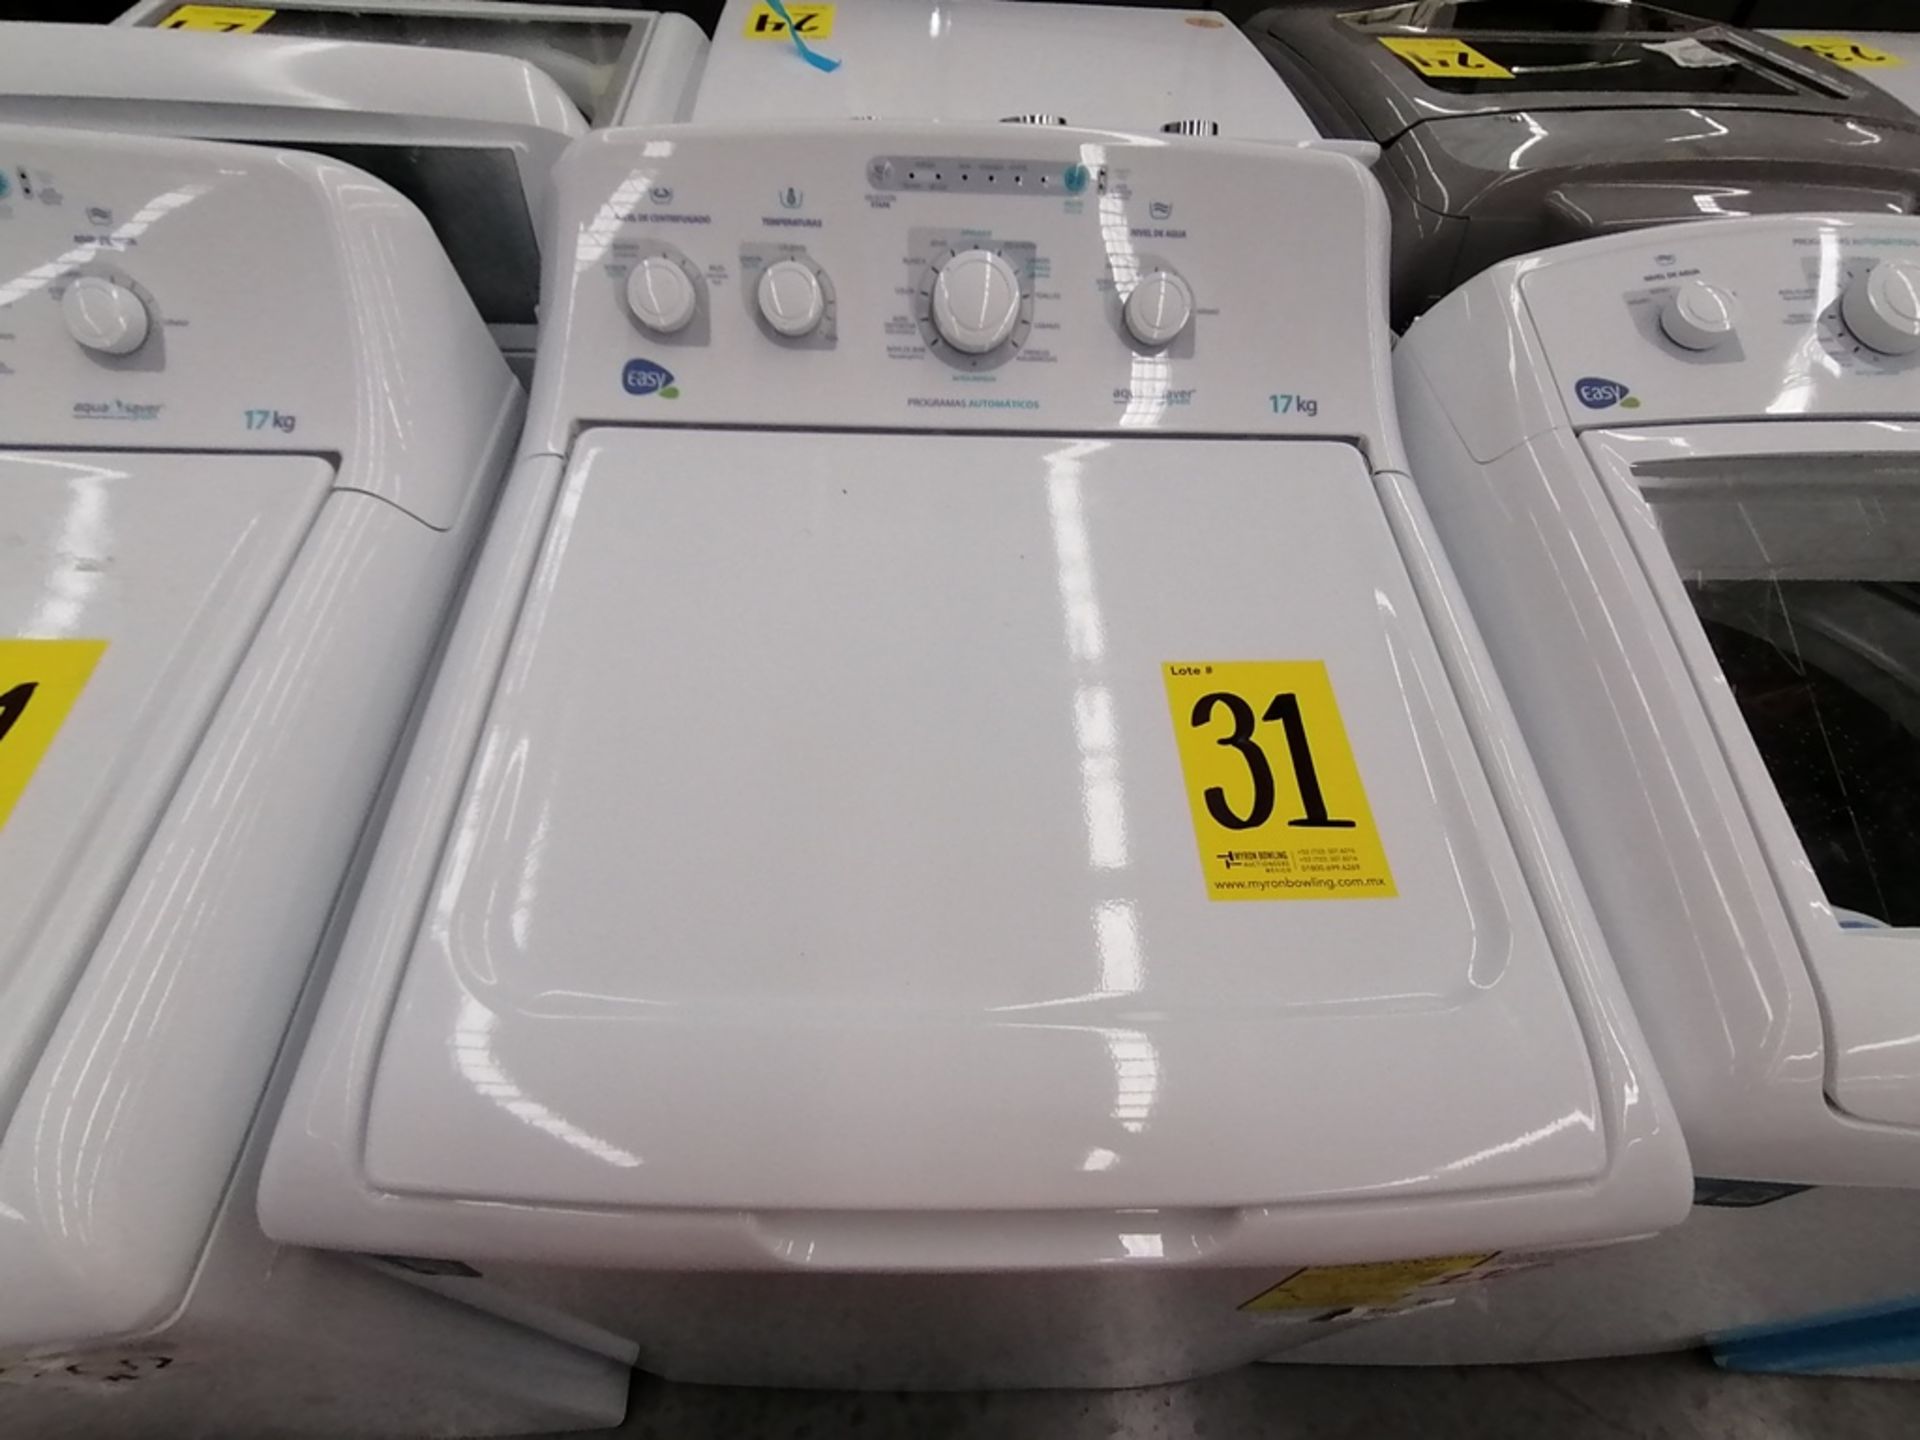 Lote de 3 lavadoras contiene: 1 Lavadora de 17KG, Marca Easy, Modelo LEA77114CBAB03, Serie 2105S522 - Image 22 of 30